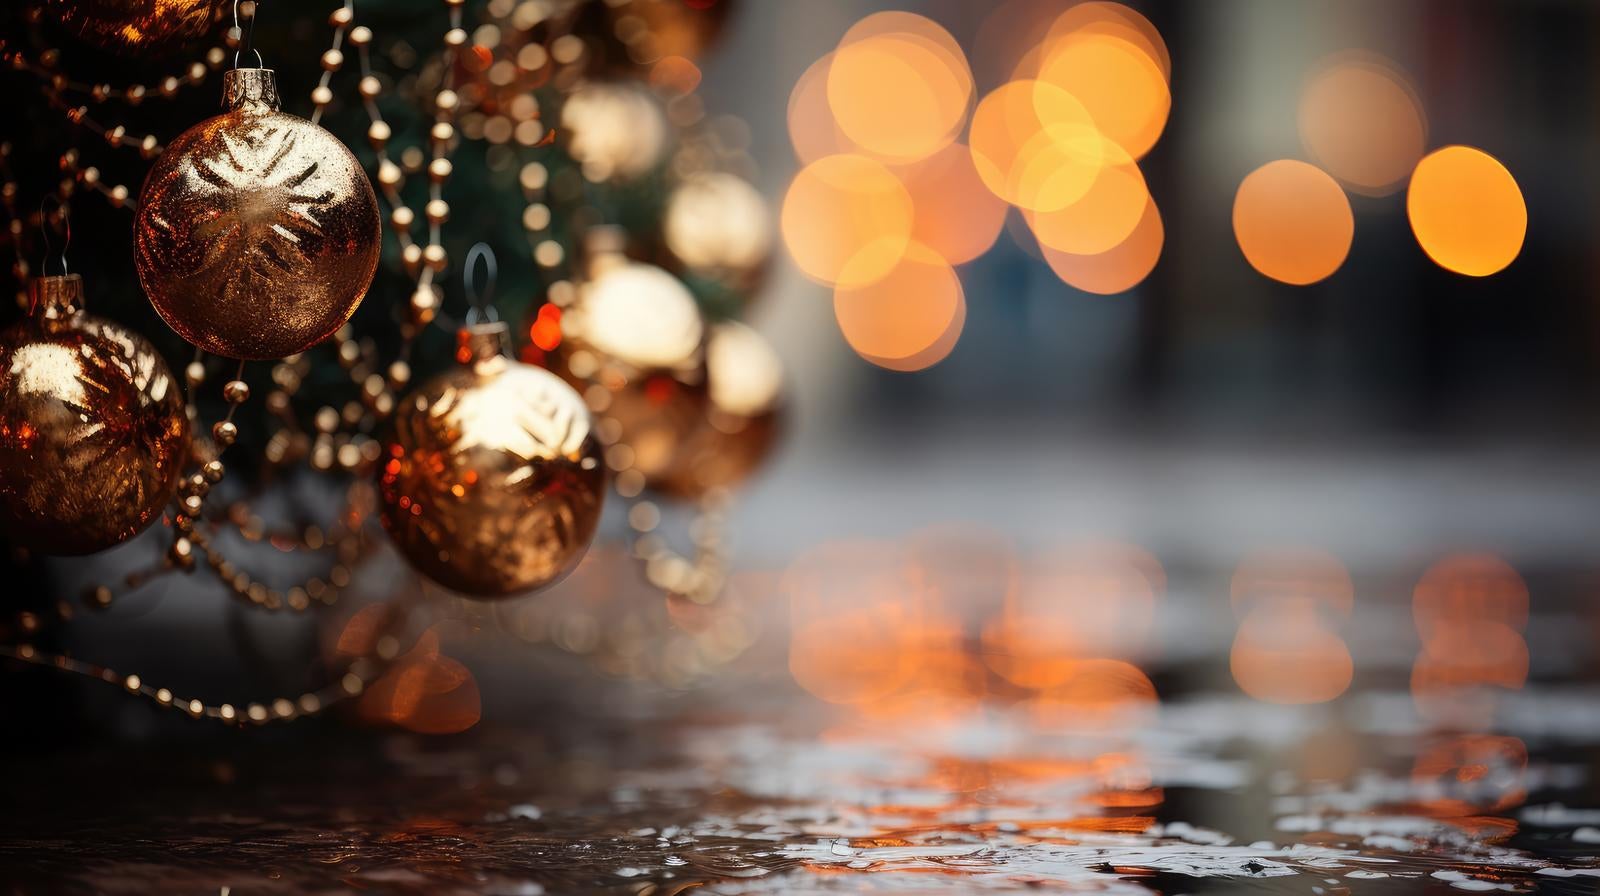 「雨がふる地面とクリスマスツリー」の写真